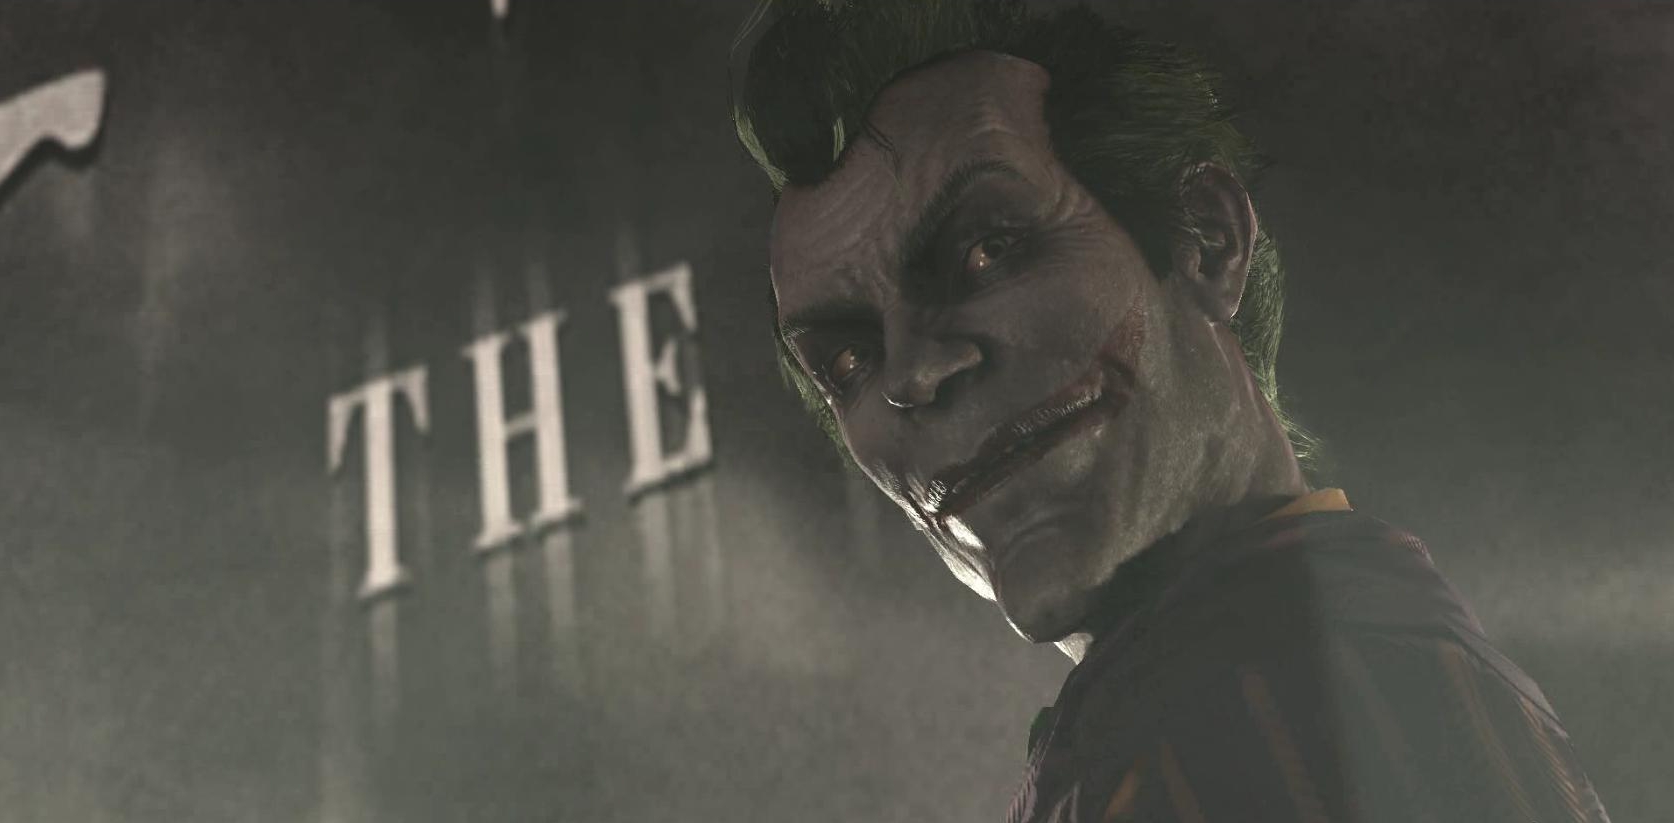 Batman: Arkham City PC Review